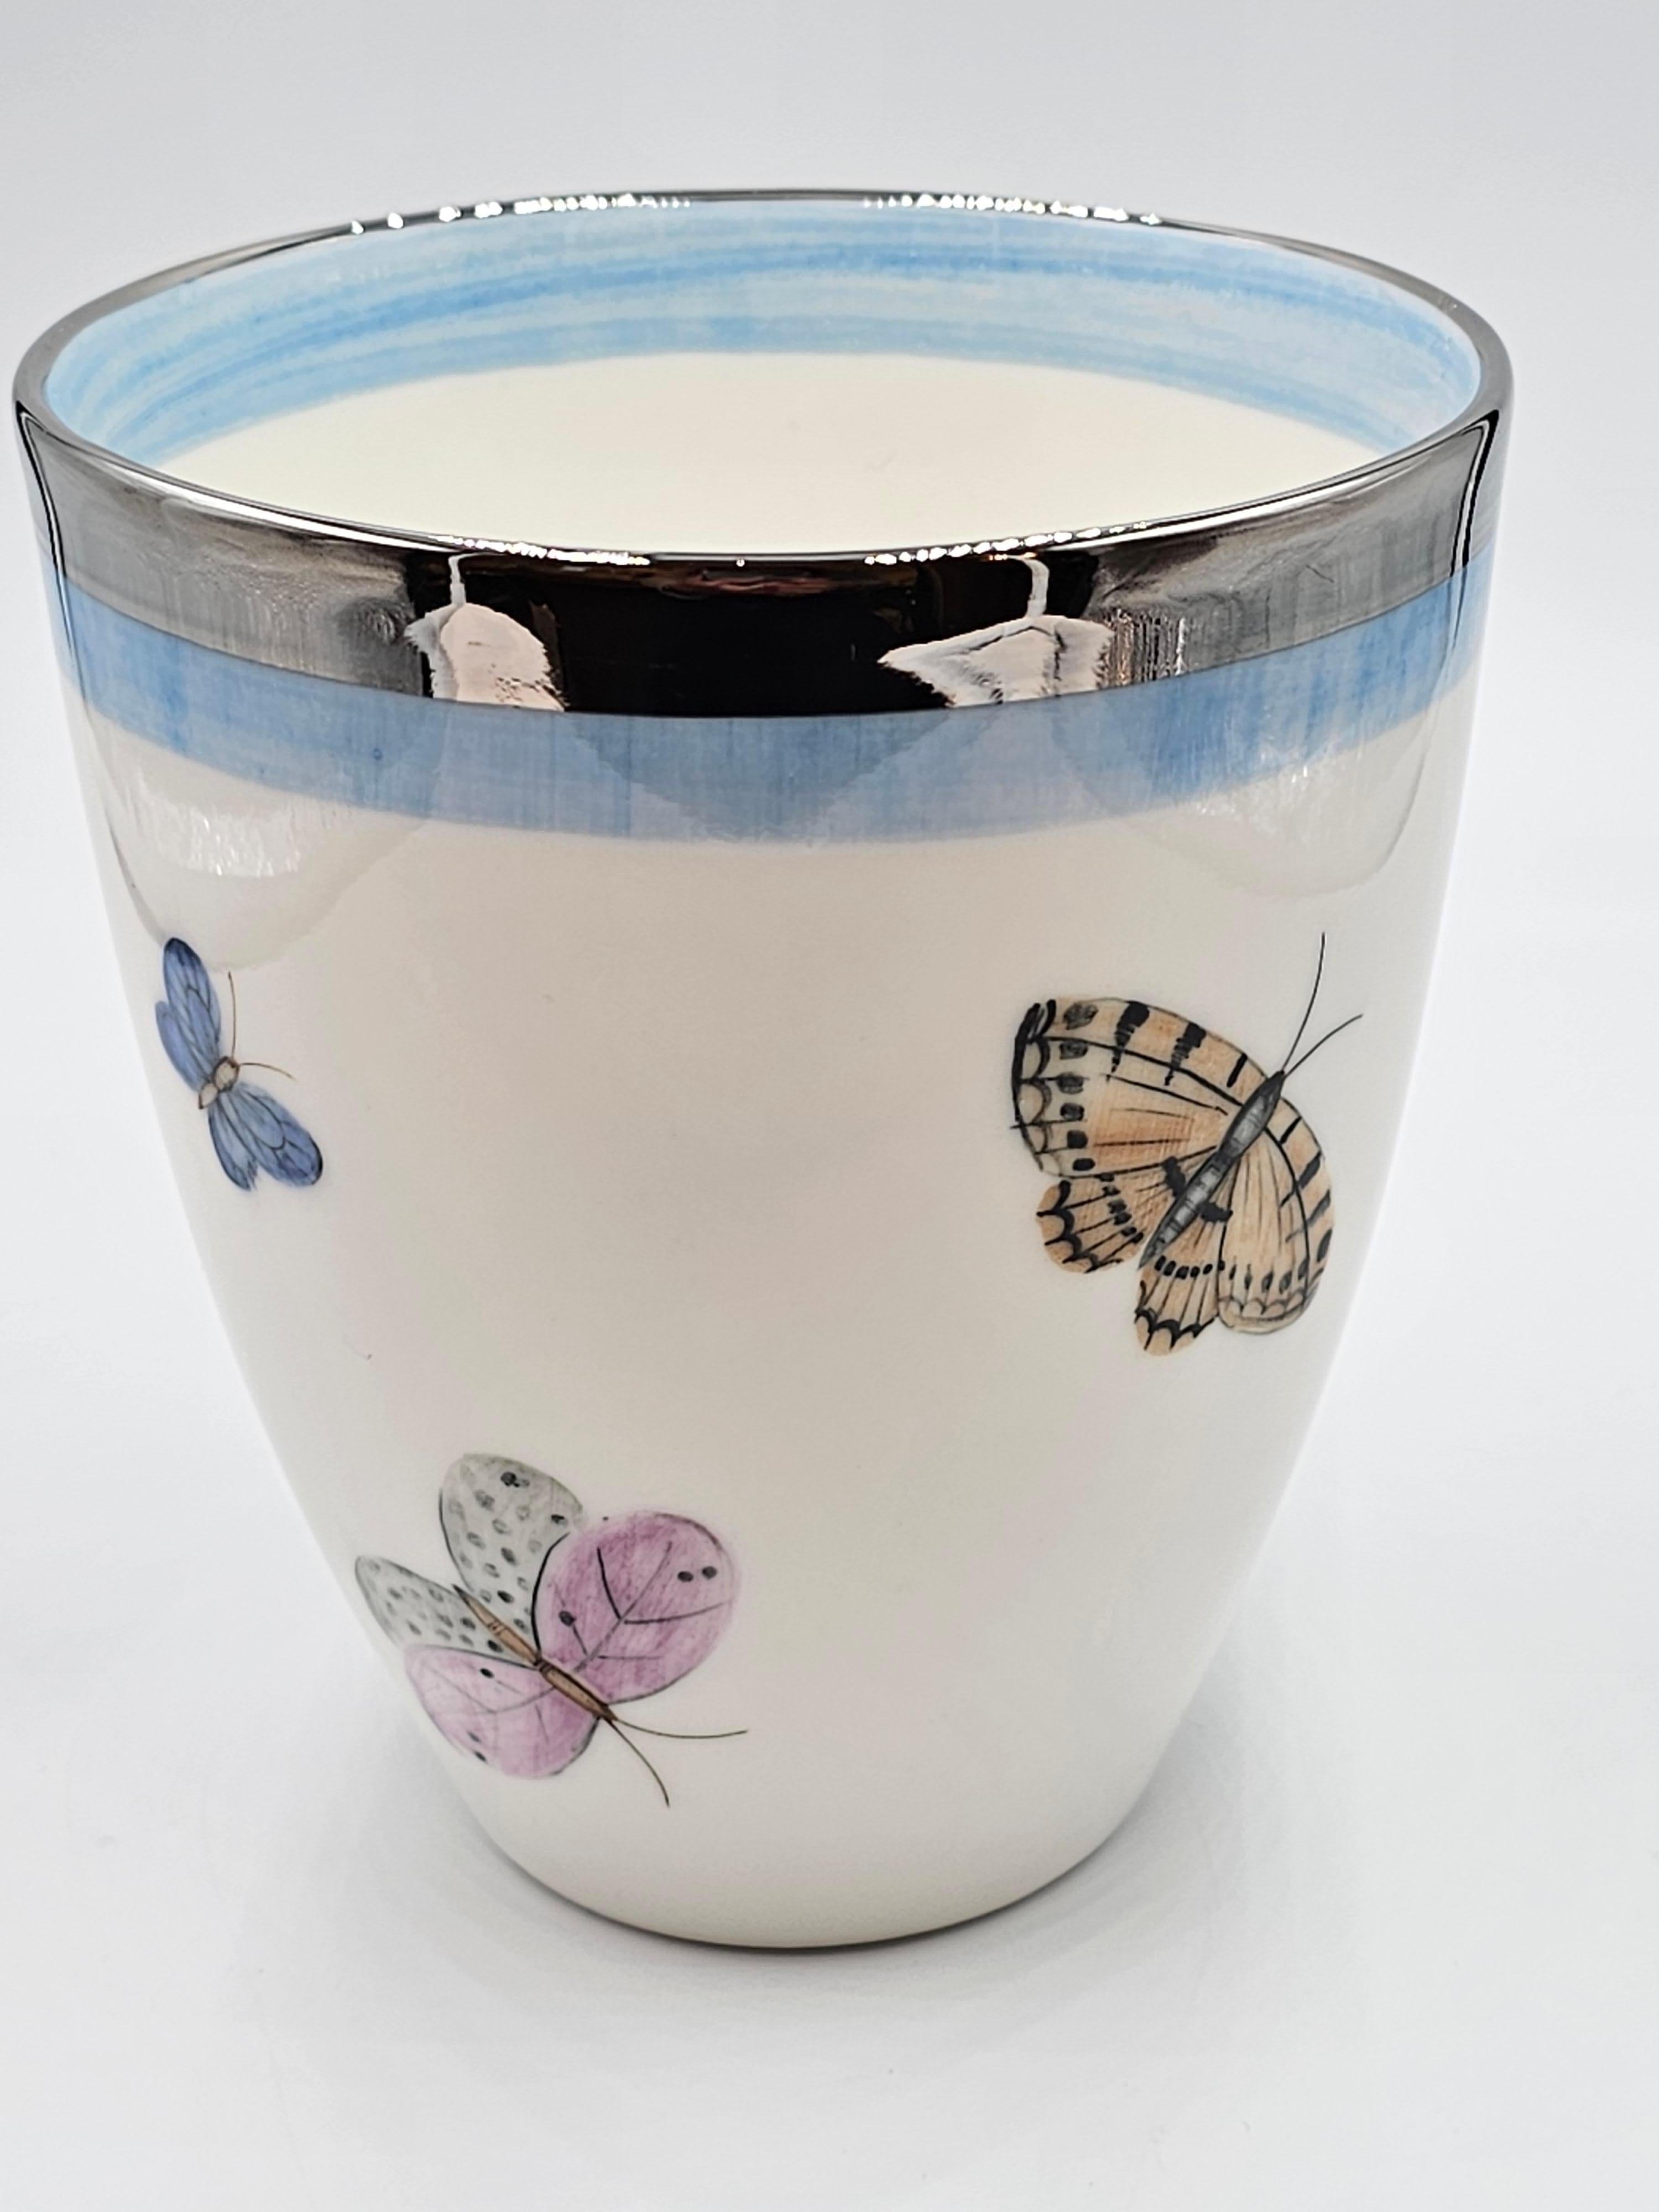 Freihändig bemalte Porzellanvase mit einem Schmetterlingsdekor rundherum. Mit einem hellblauen und einem platinfarbenen Rand versehen. Komplett handgefertigt in Bayern/Deutschland mit einem exklusiven Dekor für Sofina Boutique Kitzbühel.
Sieht schön